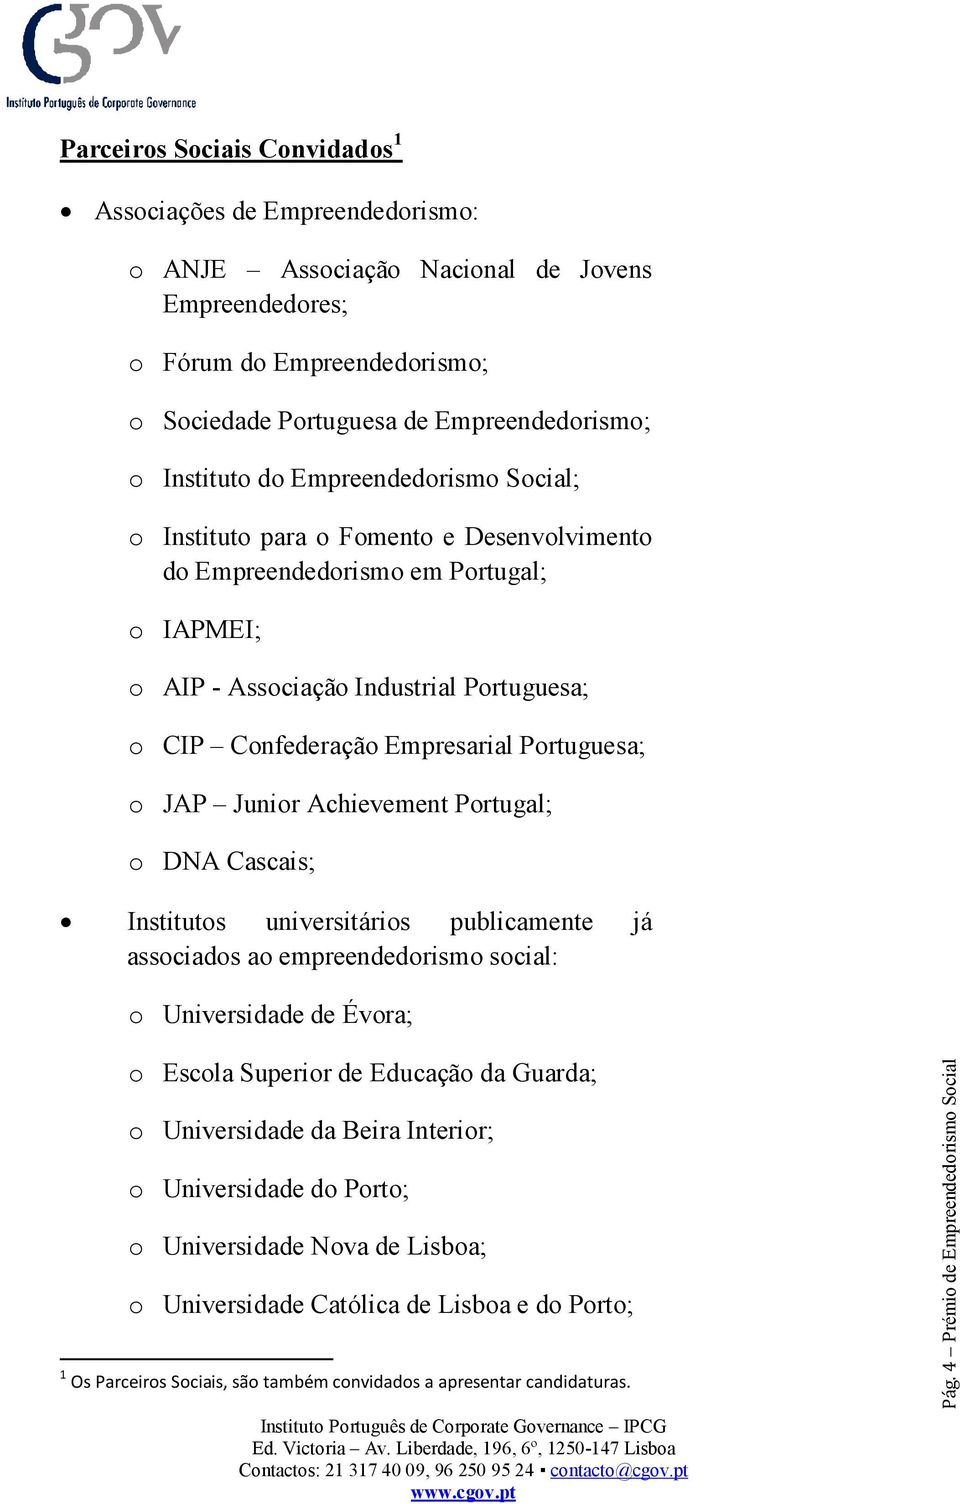 Portuguesa; o JAP Junior Achievement Portugal; o DNA Cascais; Institutos universitários publicamente já associados ao empreendedorismo social: o Universidade de Évora; o Escola Superior de Educação